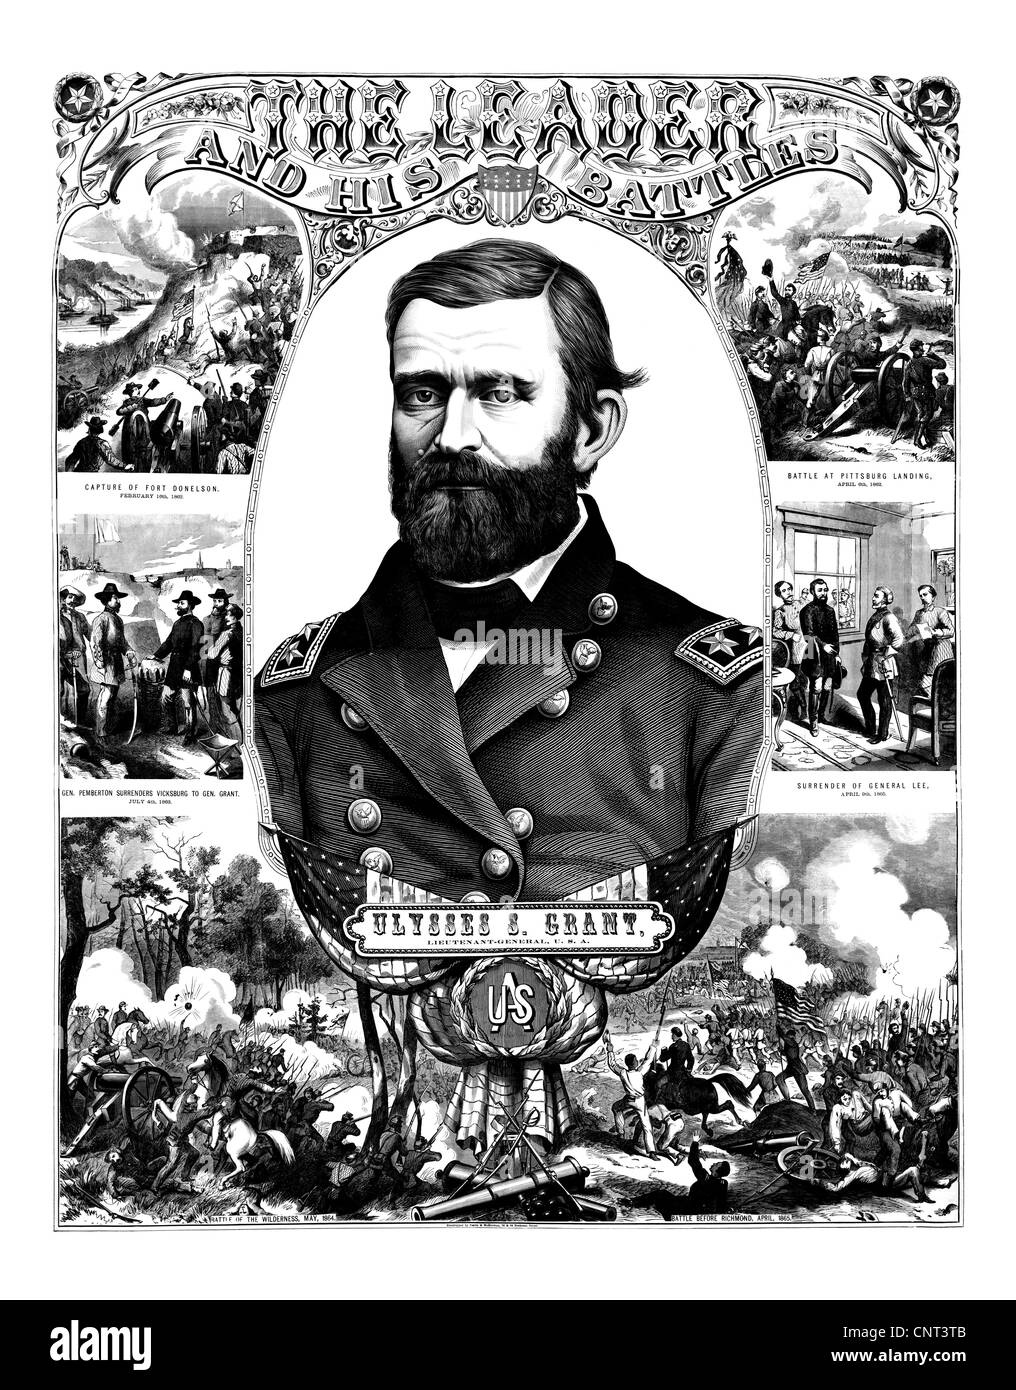 Vintage Guerra civile poster del generale Ulysses S. Grant indossando la sua uniforme militare. Foto Stock